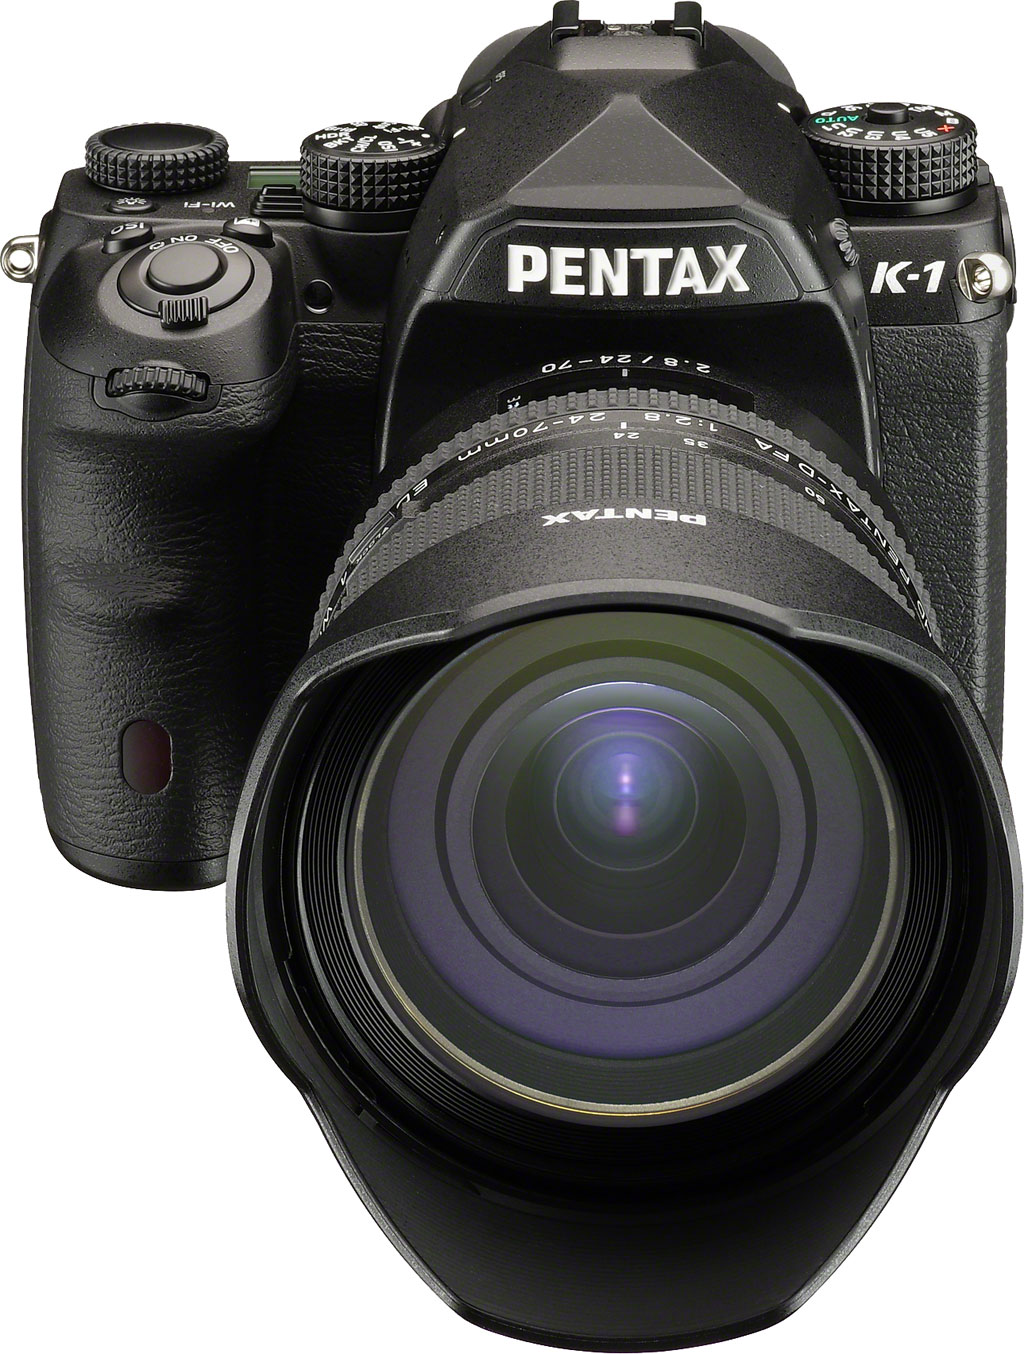 Pentax K-1 Review - Technical Info